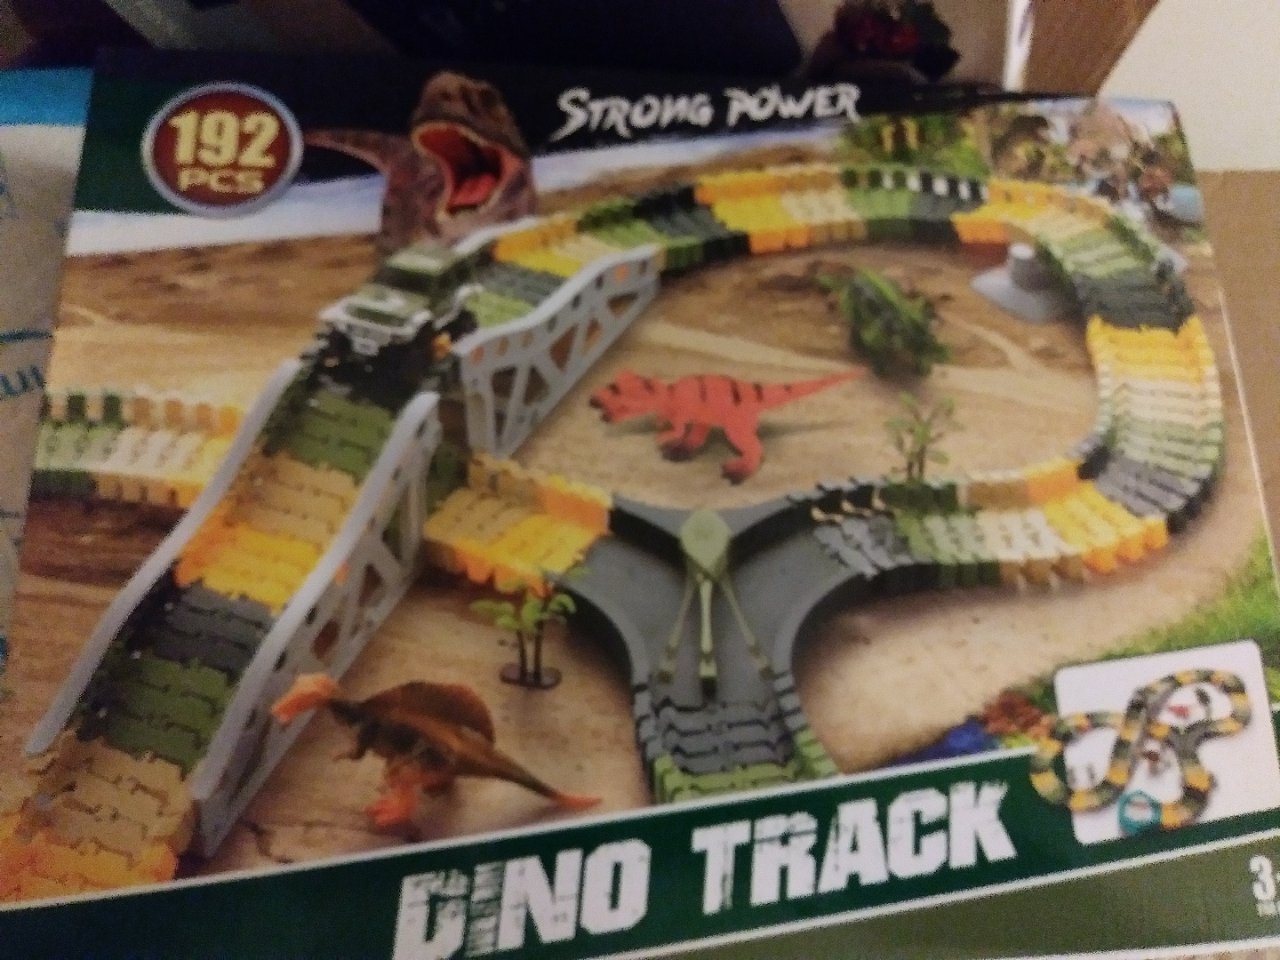 dinosaur tracks